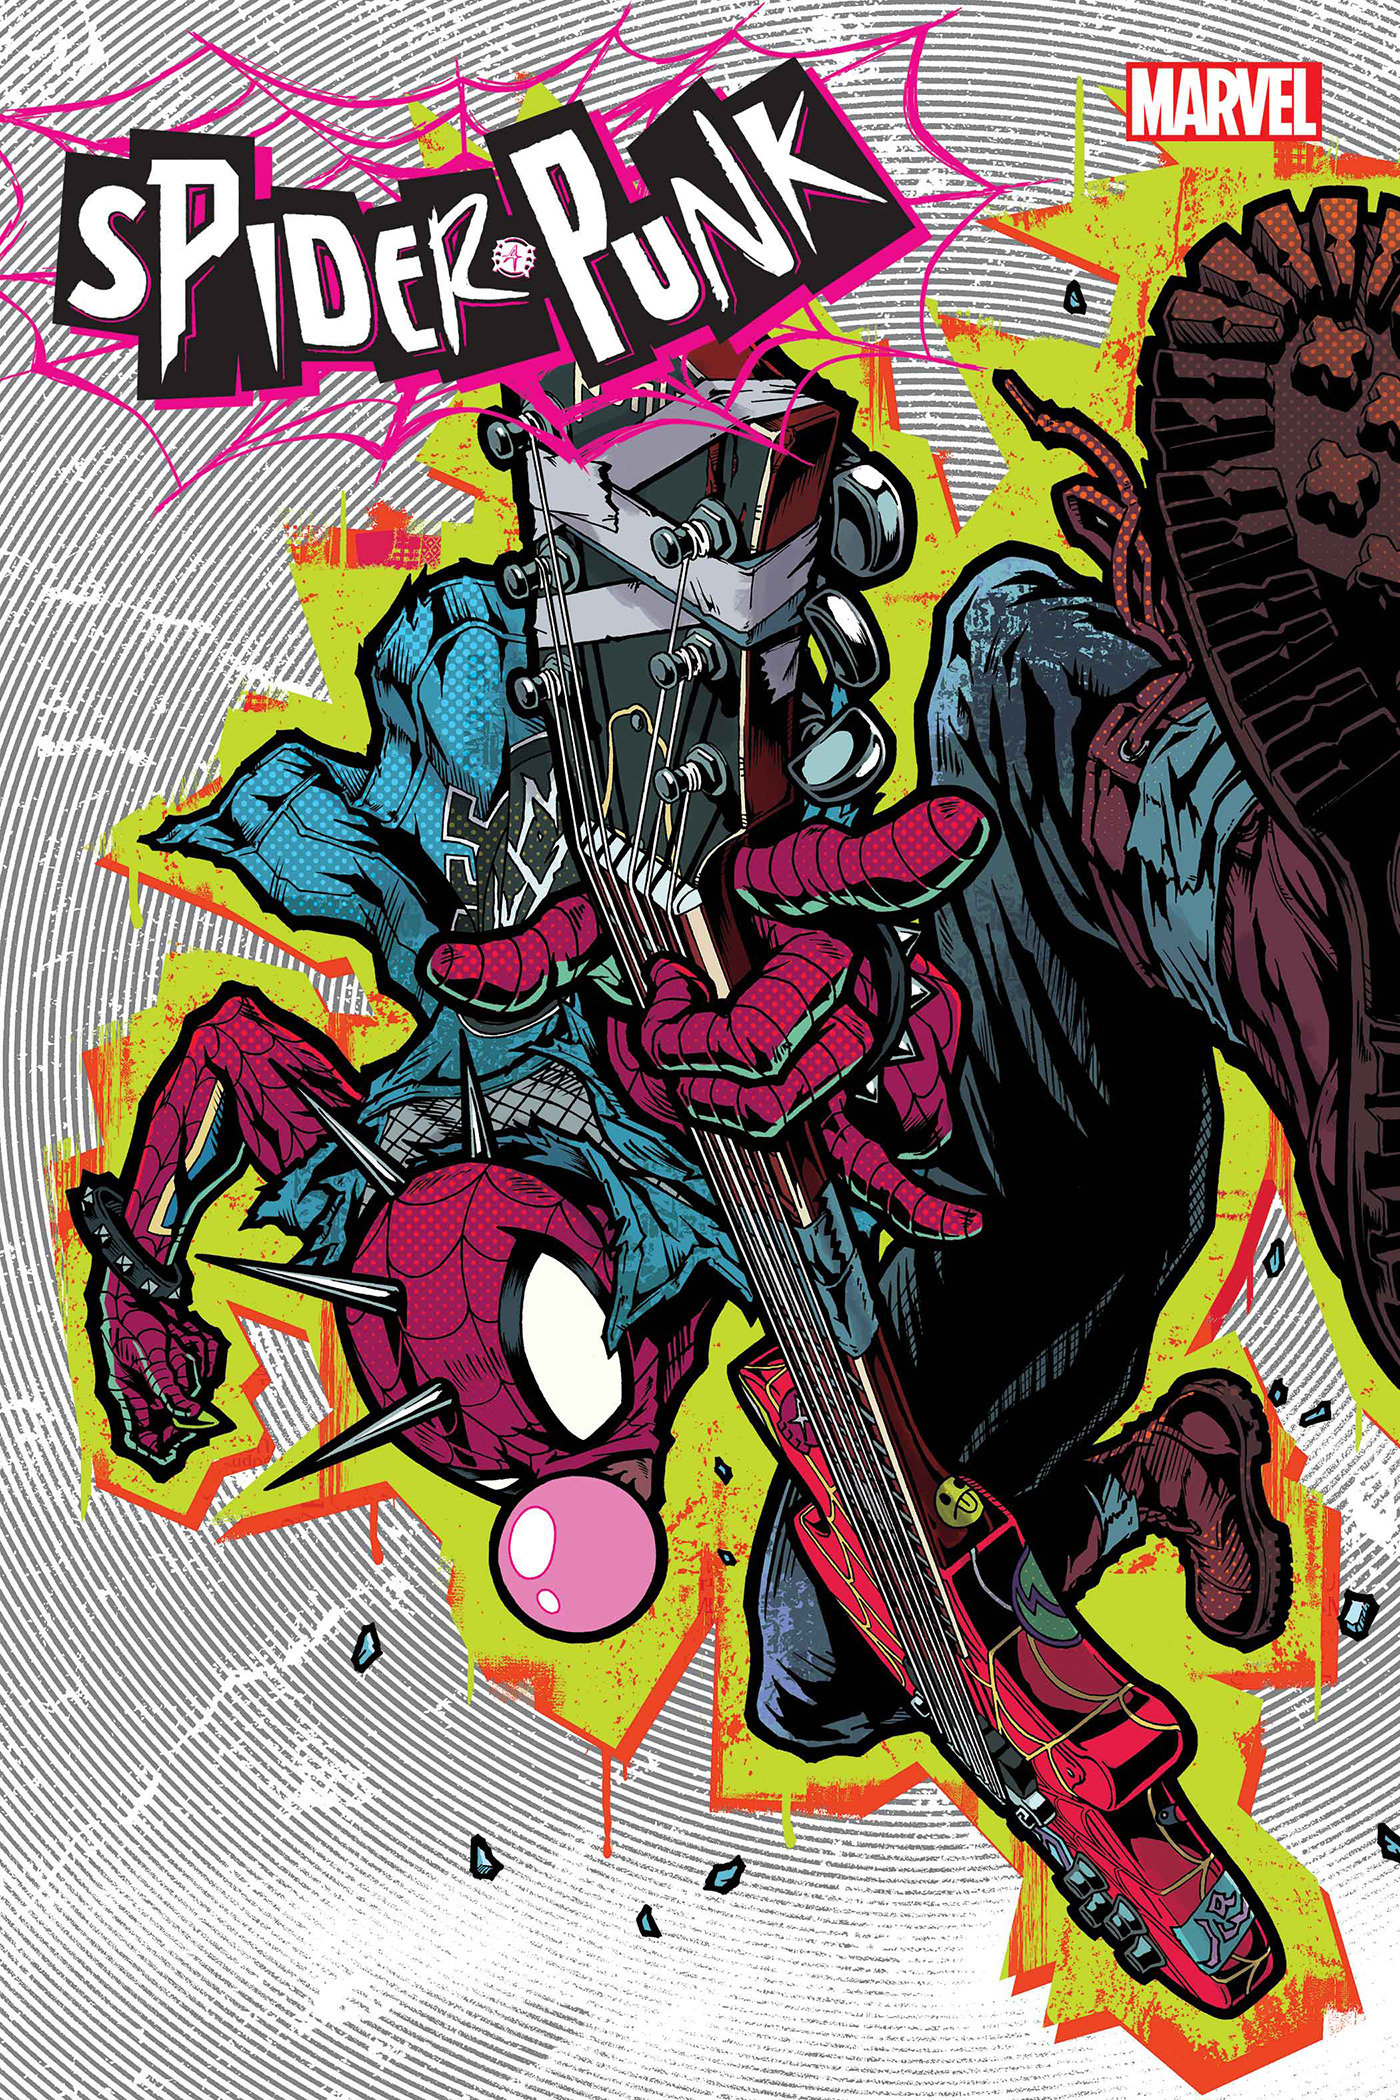 Spider-Punk #1 Poster